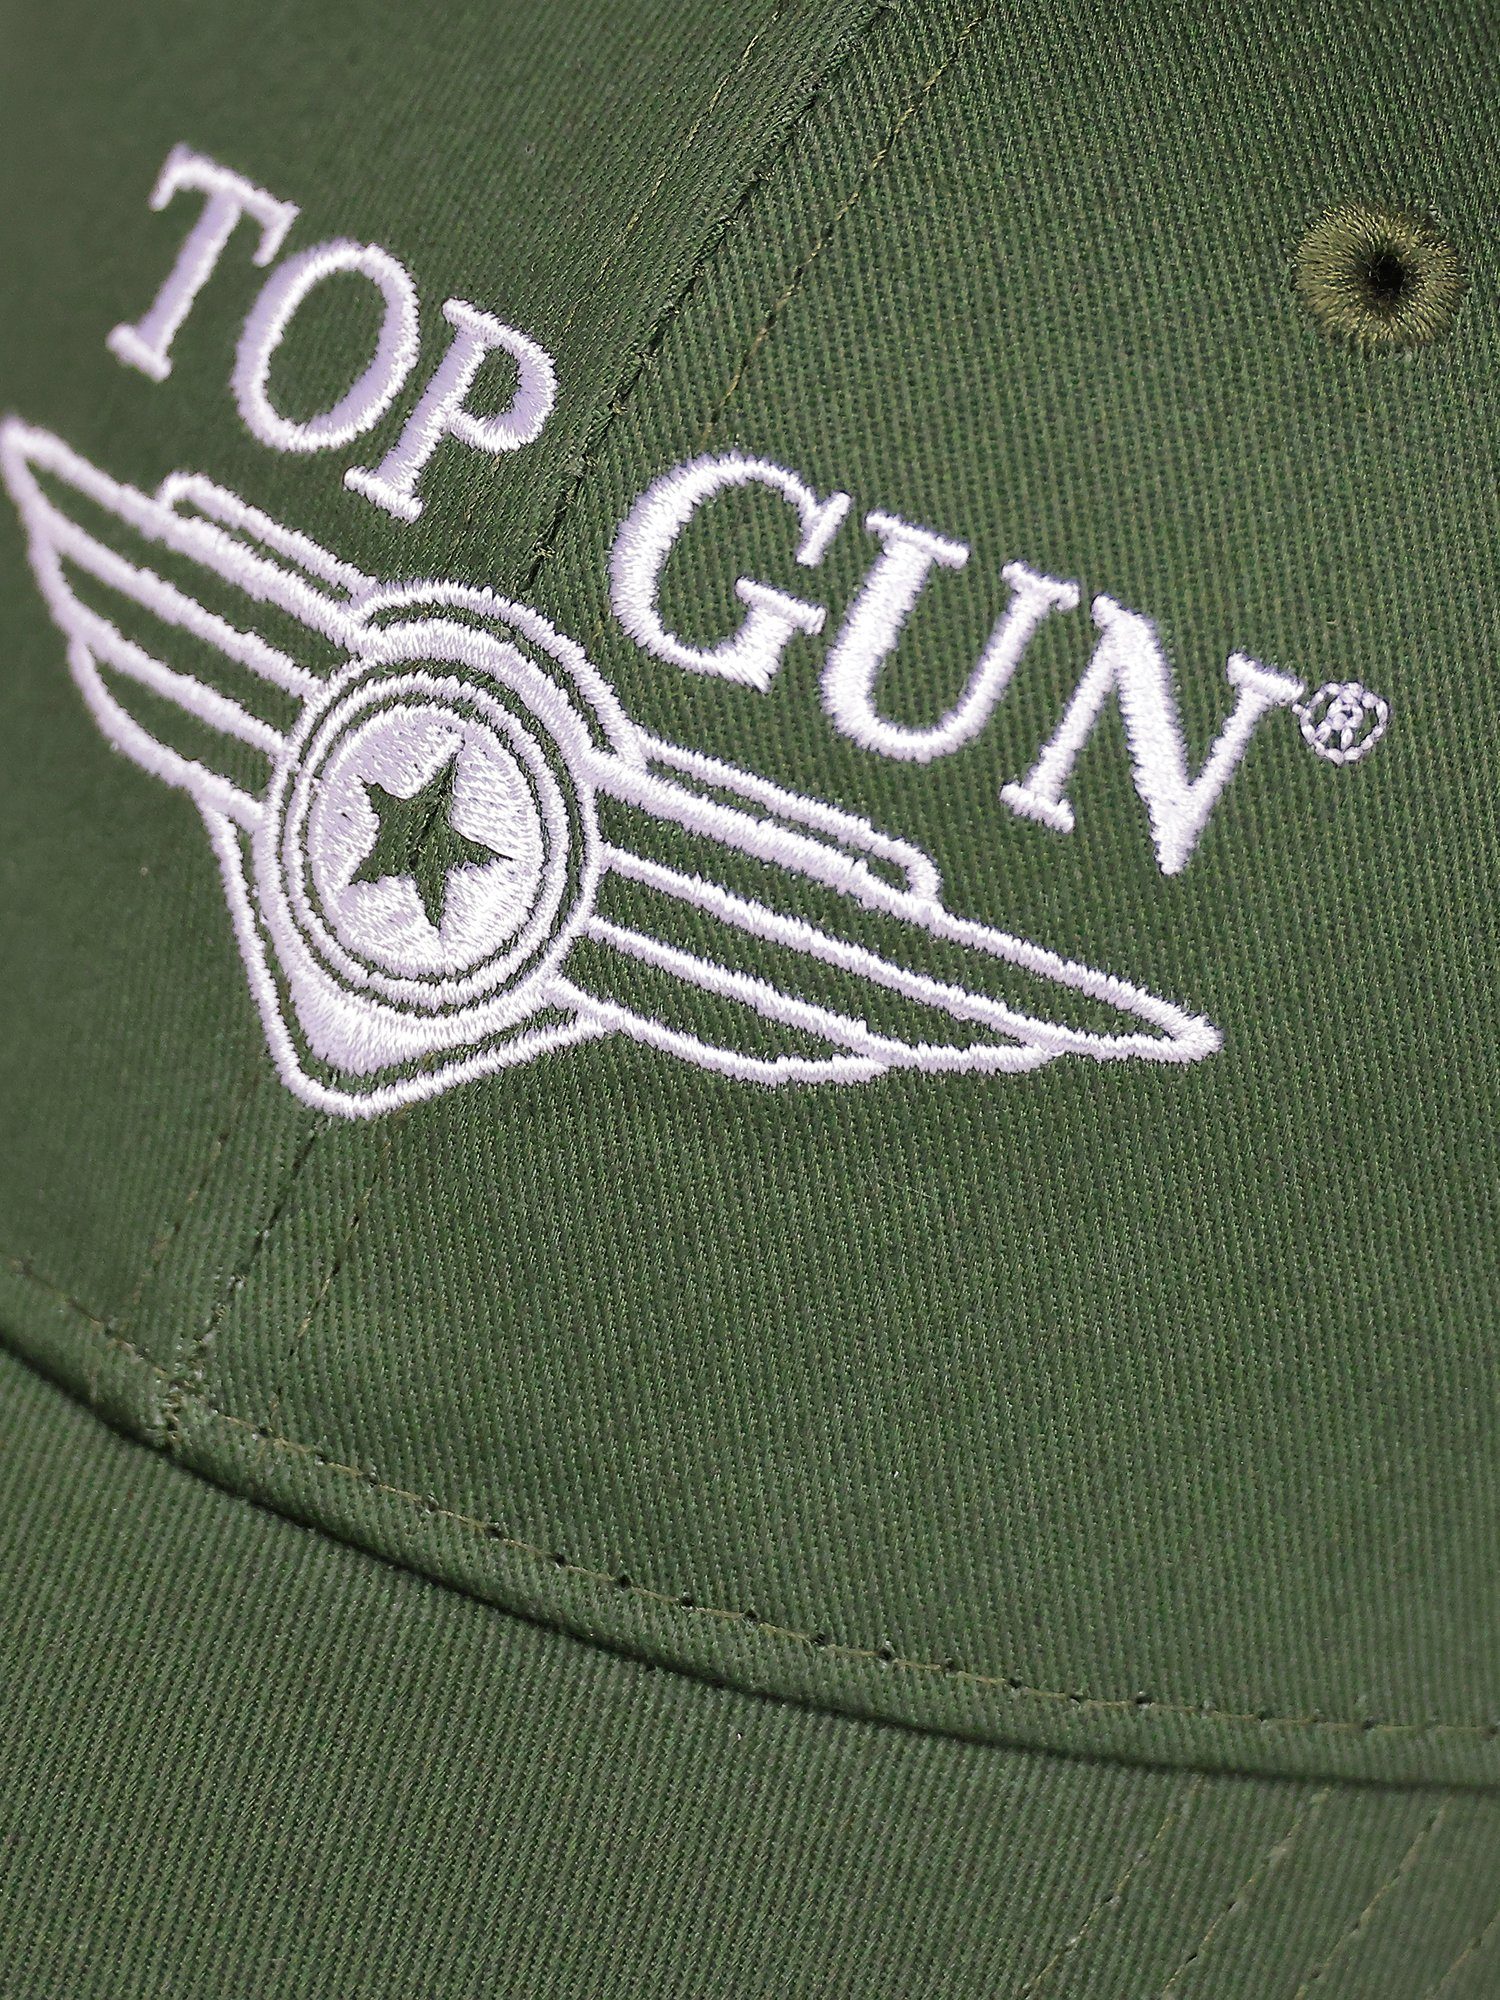 TOP GUN Snapback TG22013 Cap olive